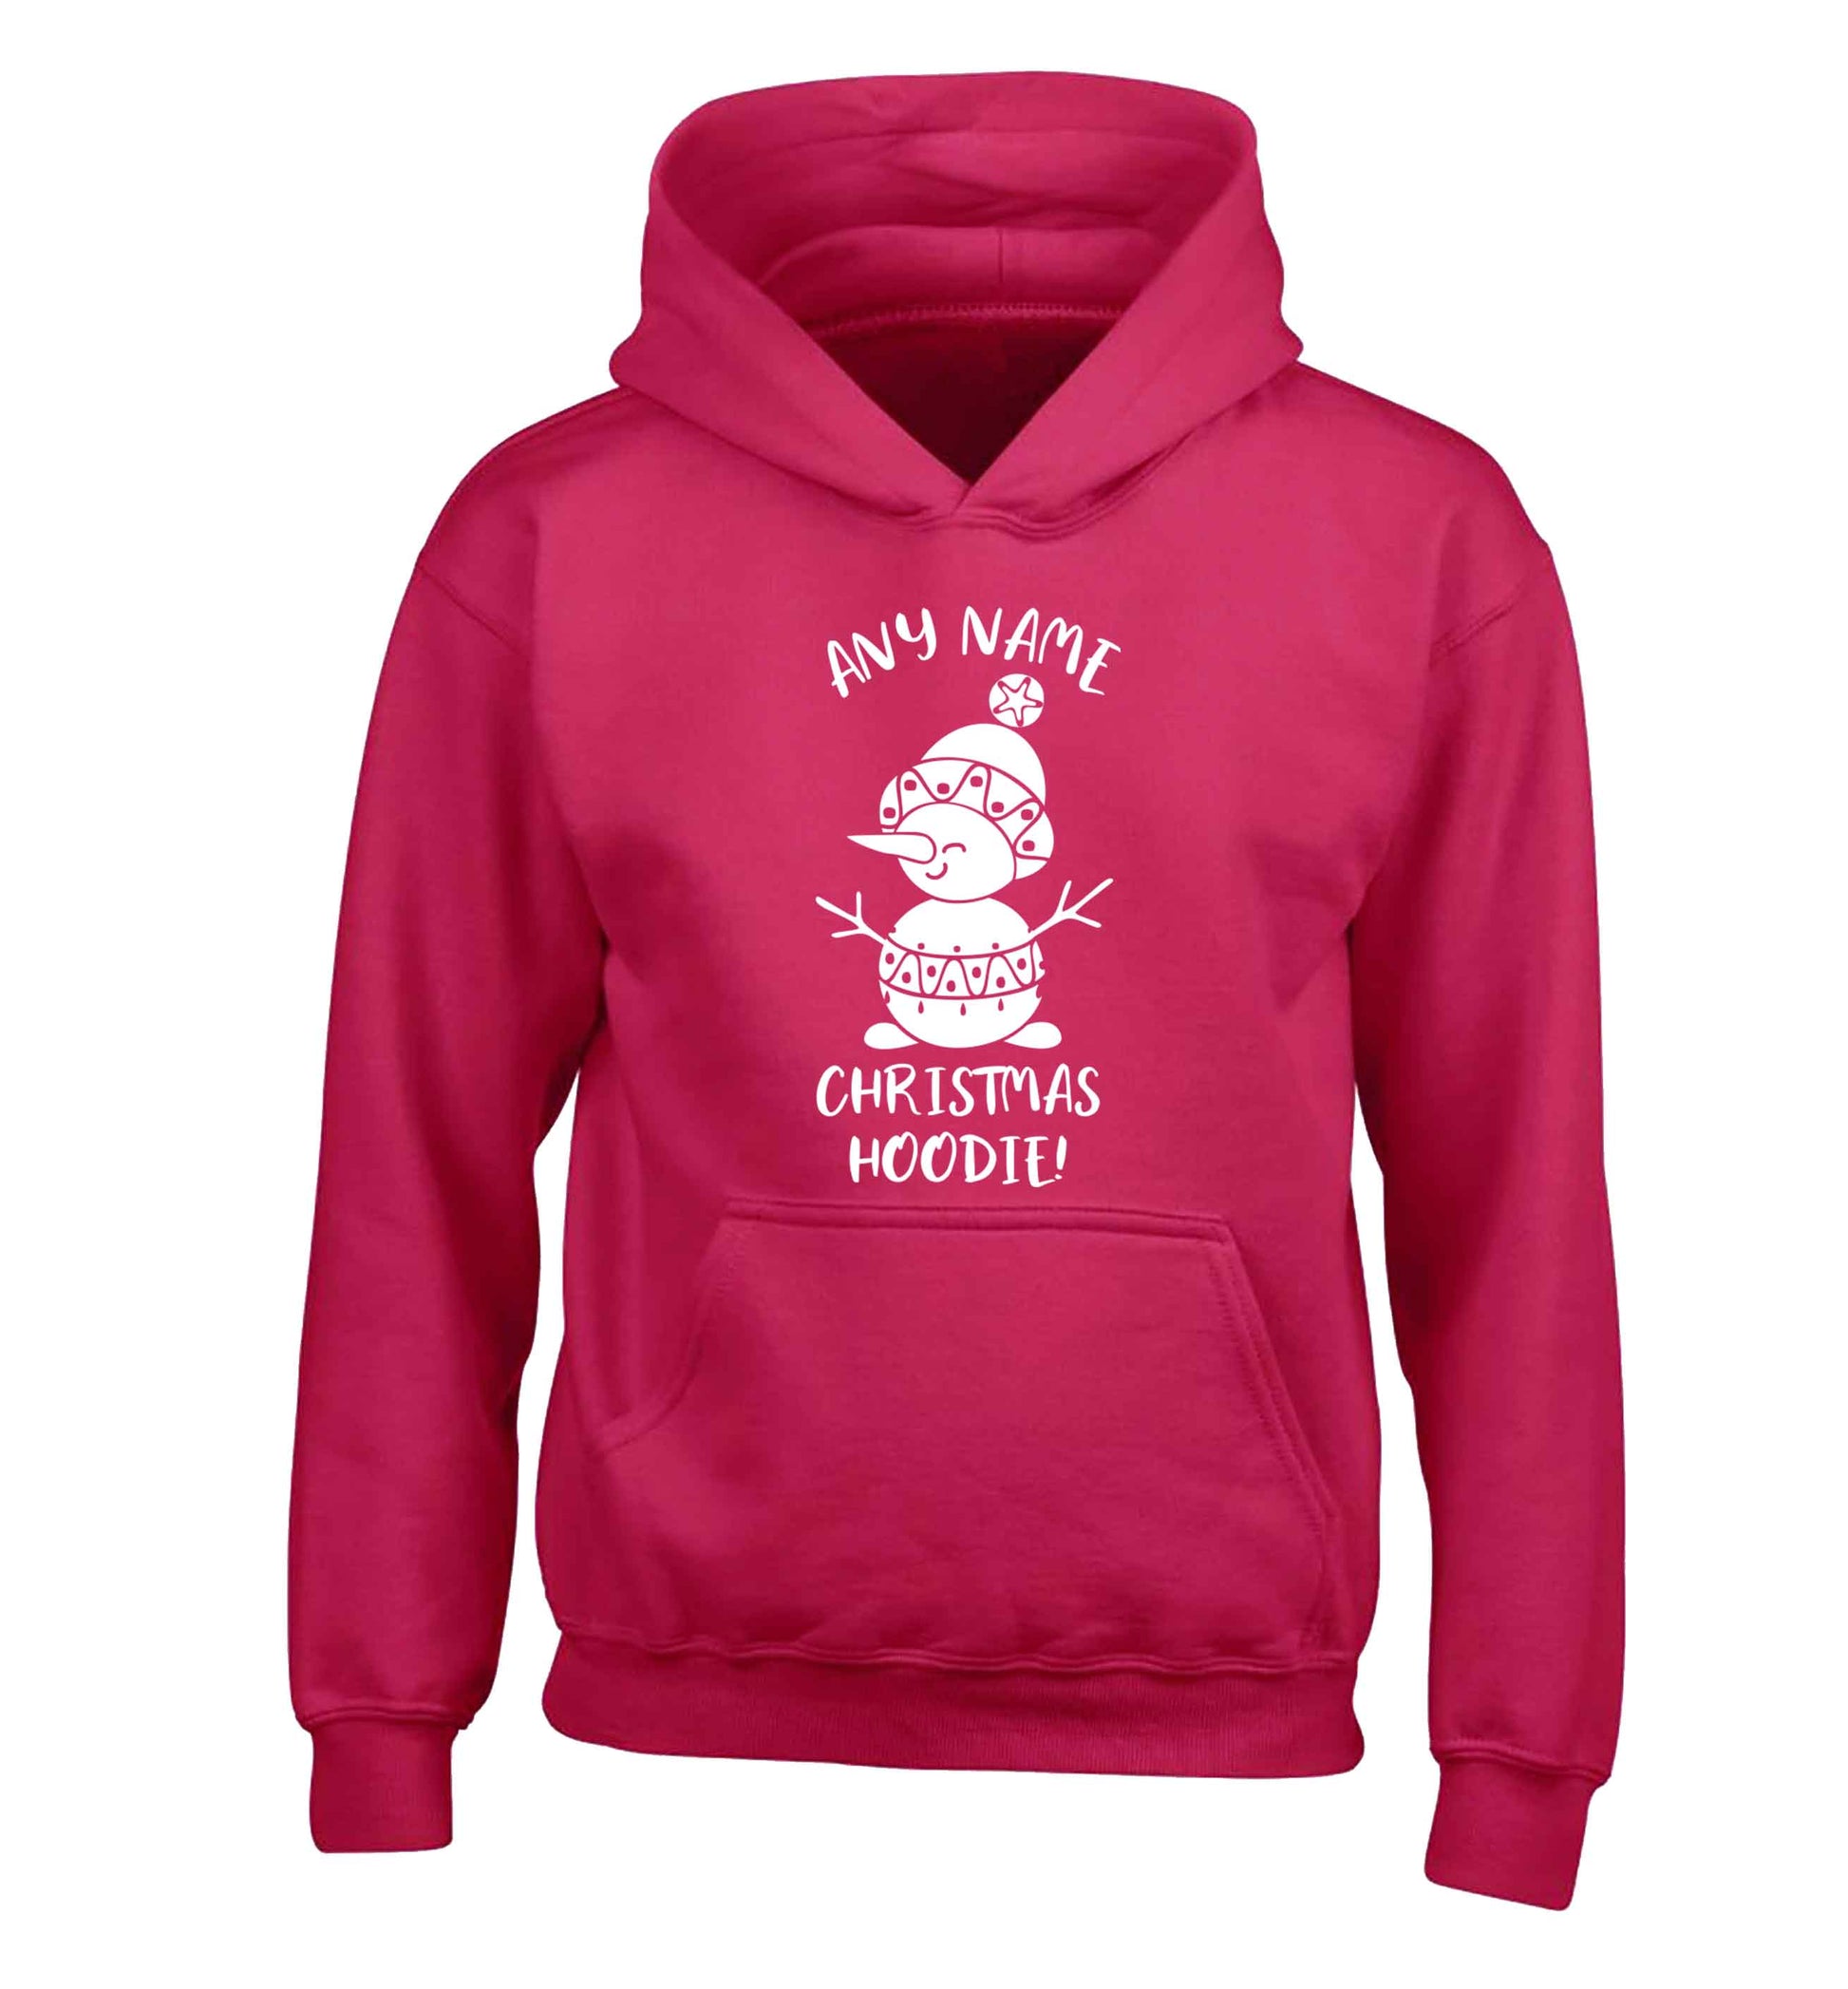 Personalised Christmas hoodie any name children's pink hoodie 12-13 Years